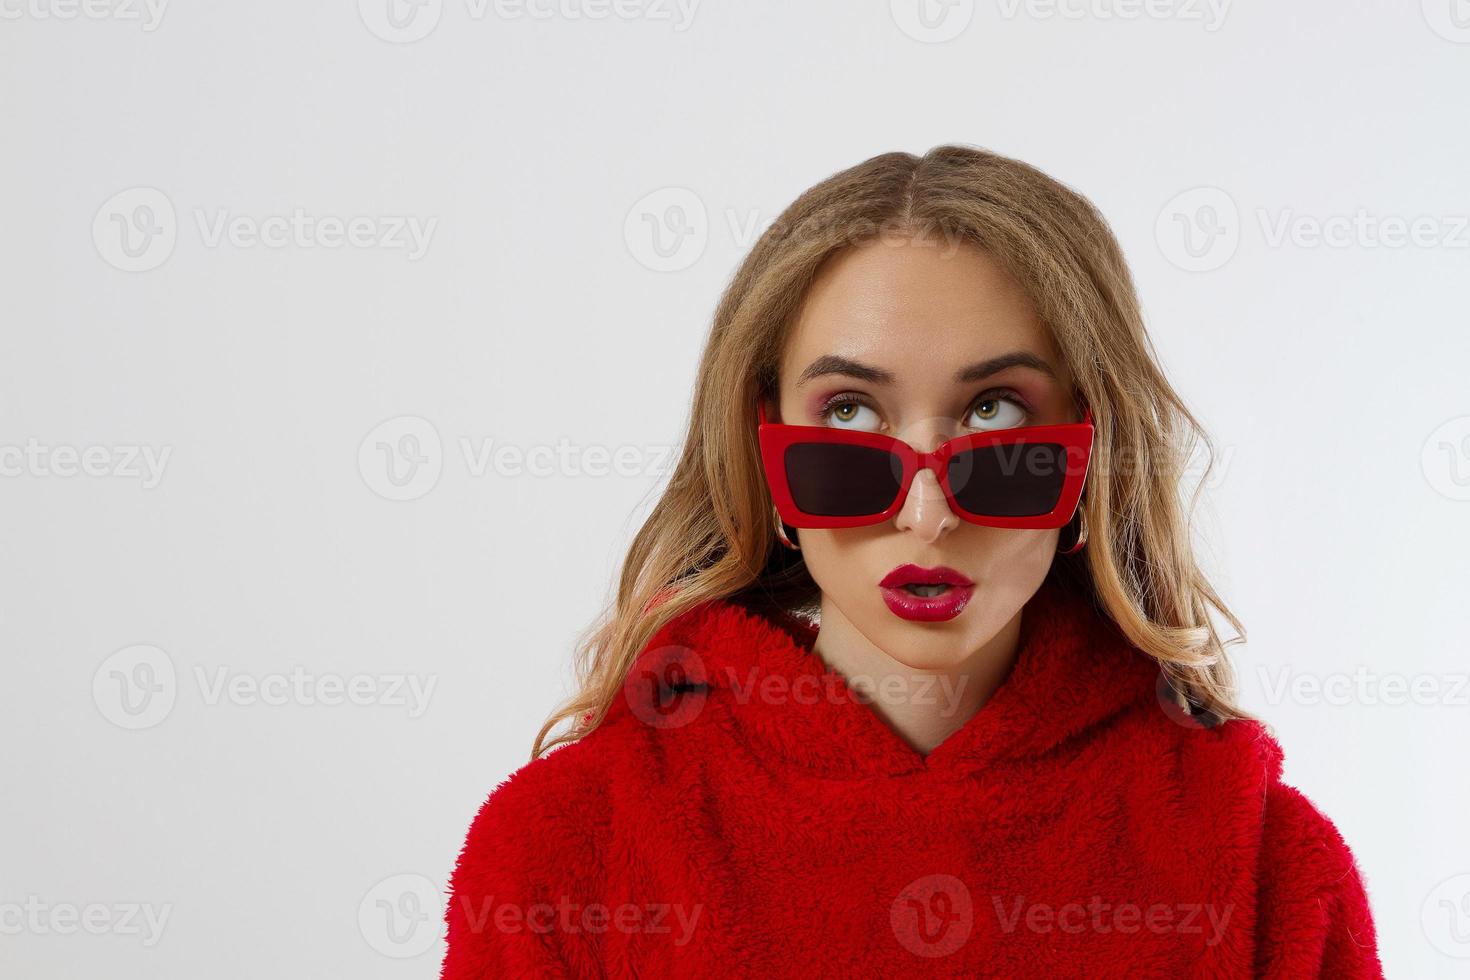 närbild kvinna ansikte med röda läppar, solglasögon hoodie isolerad på vit bakgrund. moderiktig tjej i snygg outfit. makeup, skönhet koncept. vinter höstkläder. chock upphetsat kvinnligt ansikte. närbild foto